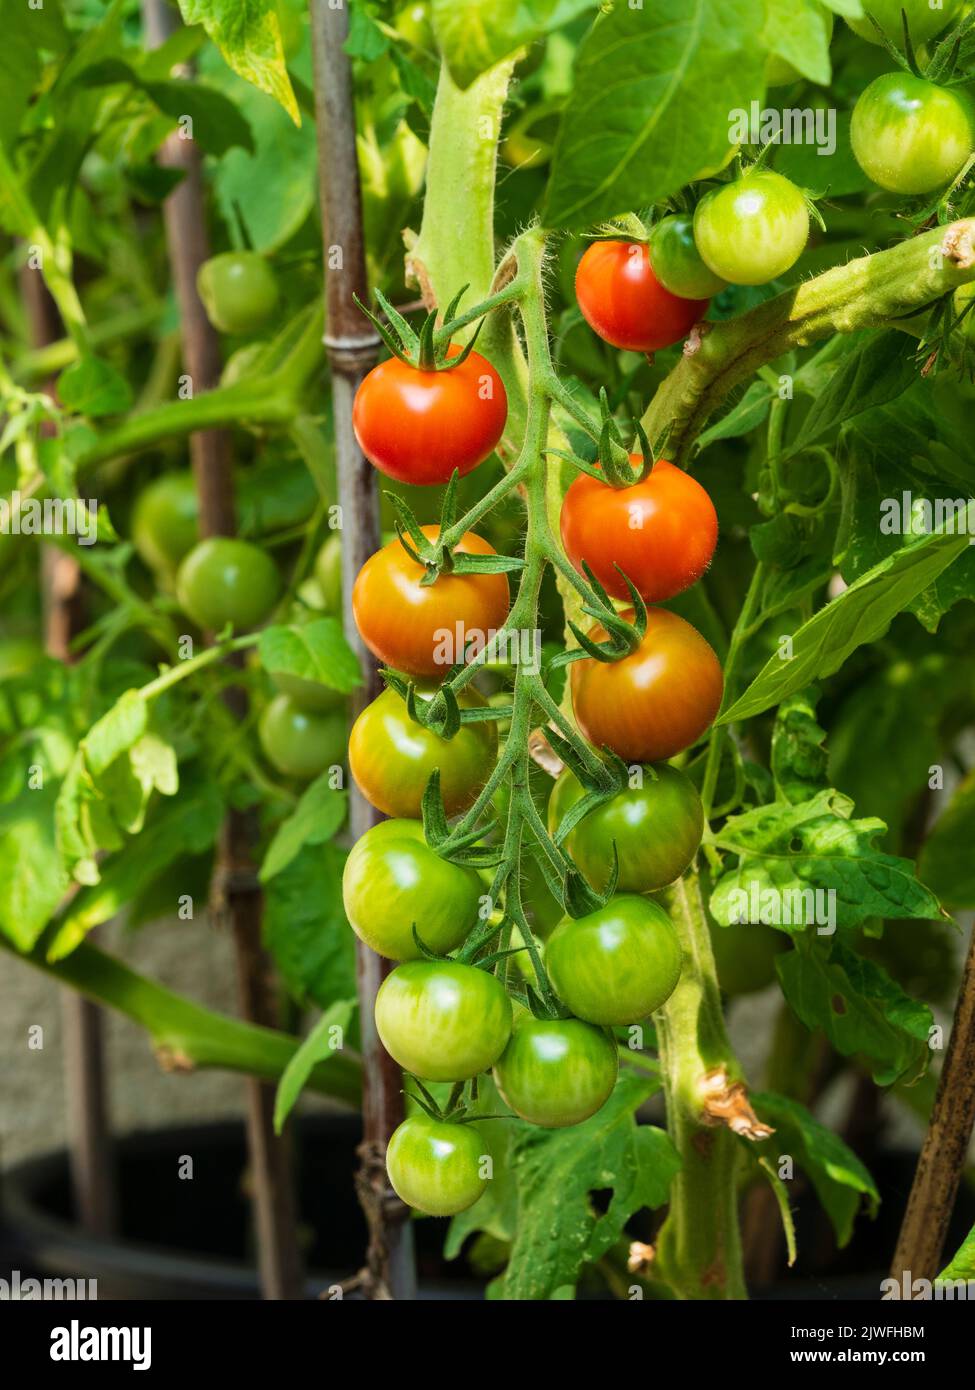 Tomates de cereza inmaduros y de color rojo maduro, Solanum lycopersicum 'Gardener's Delight' en una armadura de verano posterior Foto de stock